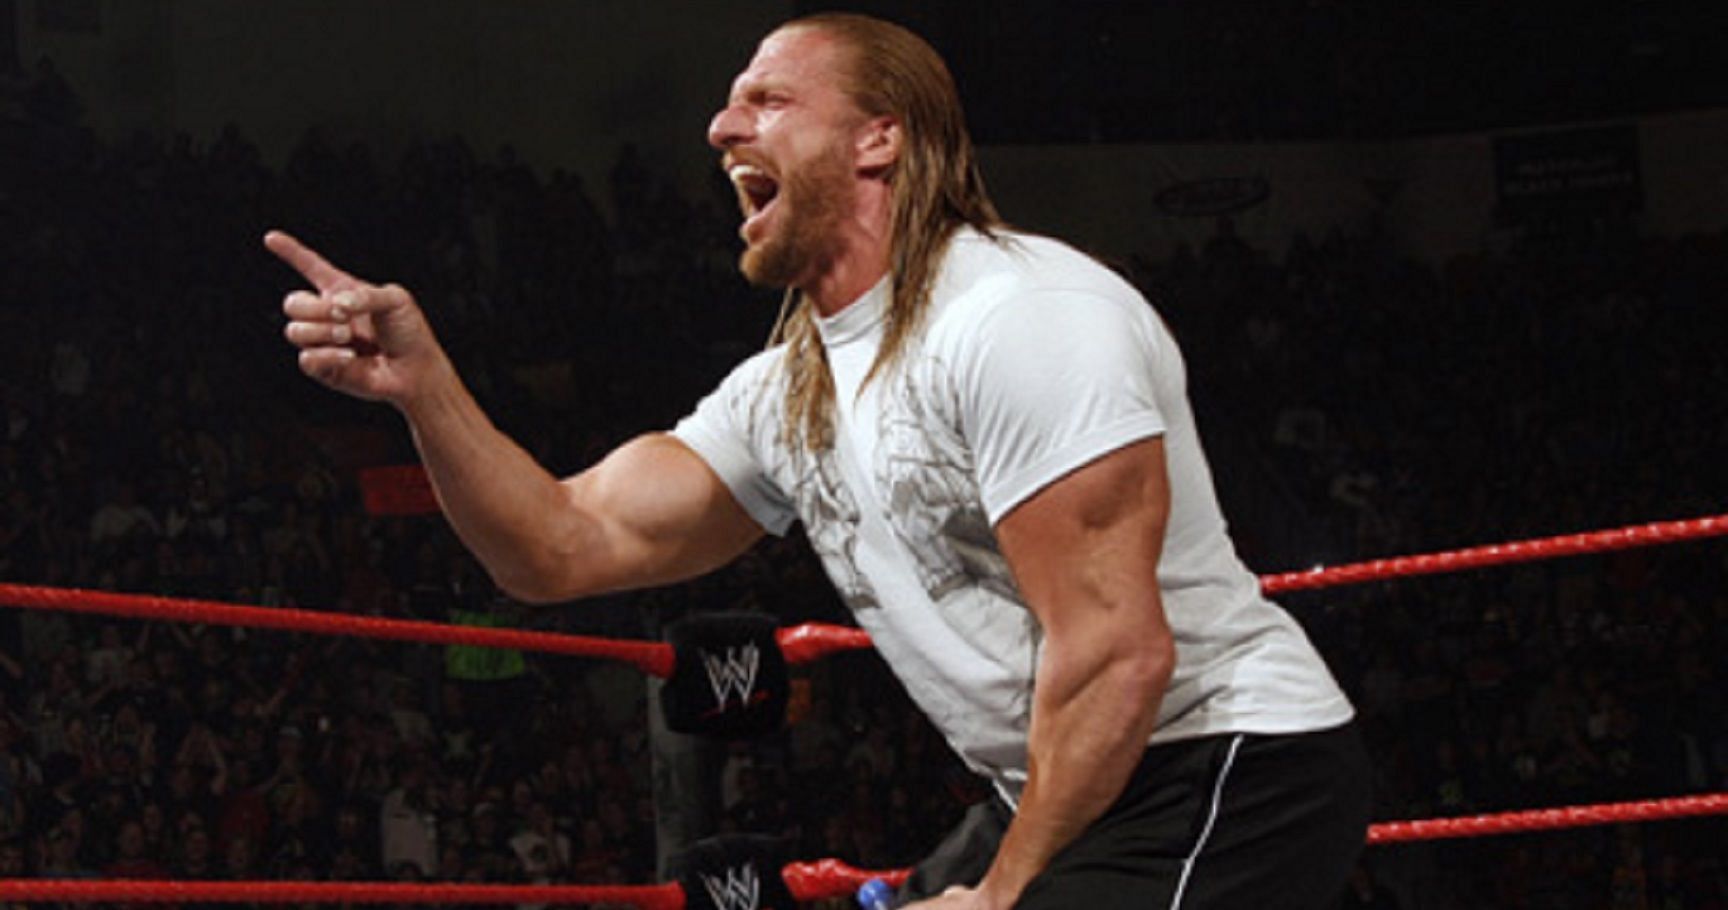 Triple H is the head booker in WWE